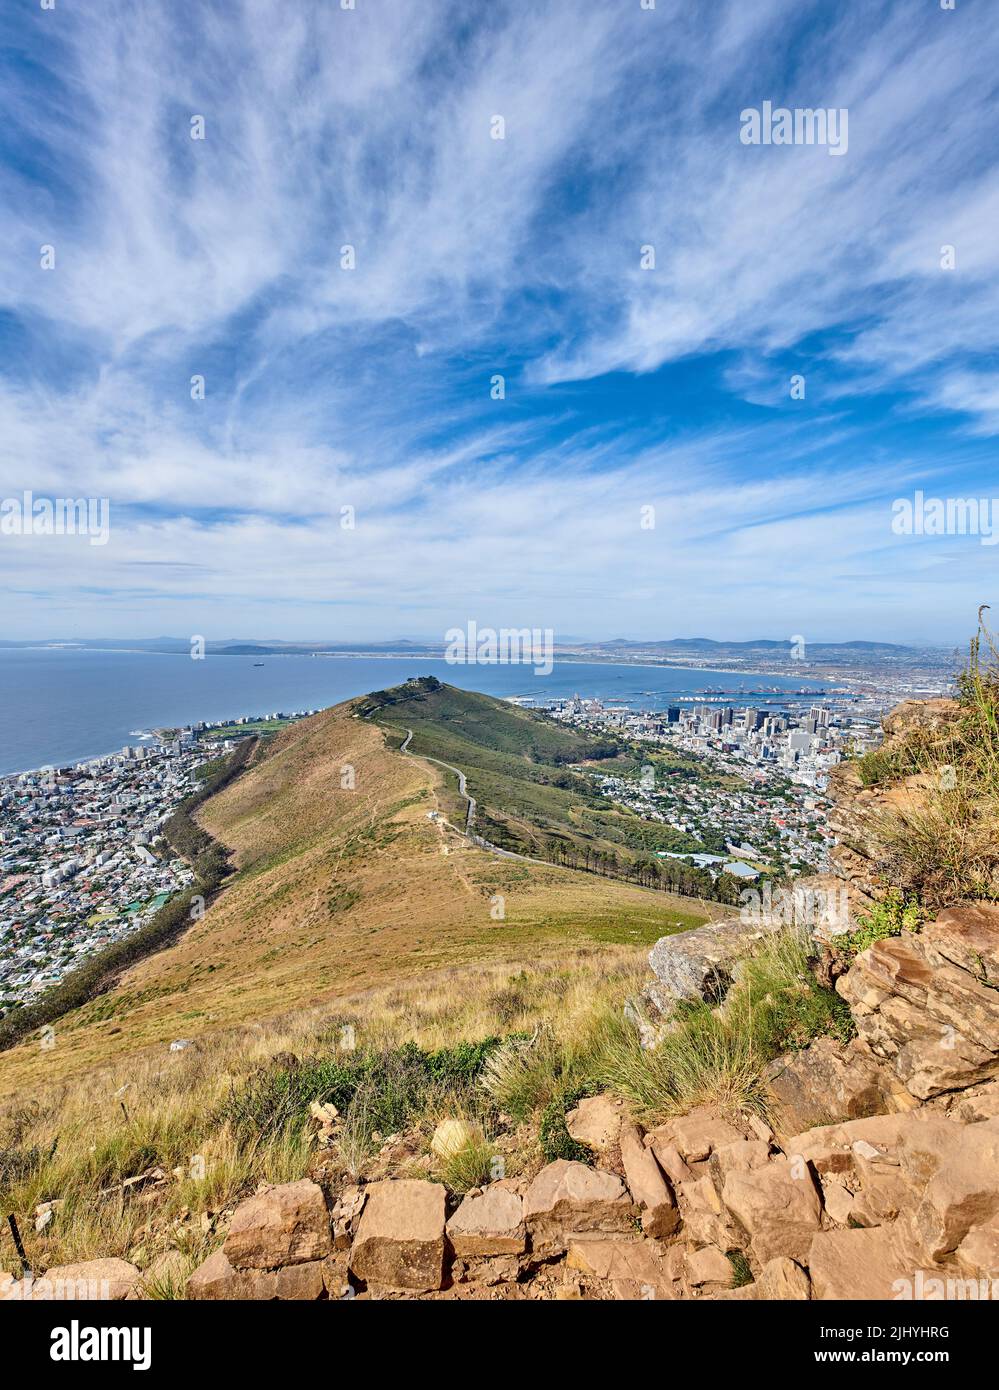 Montagna rocciosa con vista di una città costale sul mare a Città del Capo. Paesaggio di collina verde con pietre e piante circondate da una città urbana e. Foto Stock